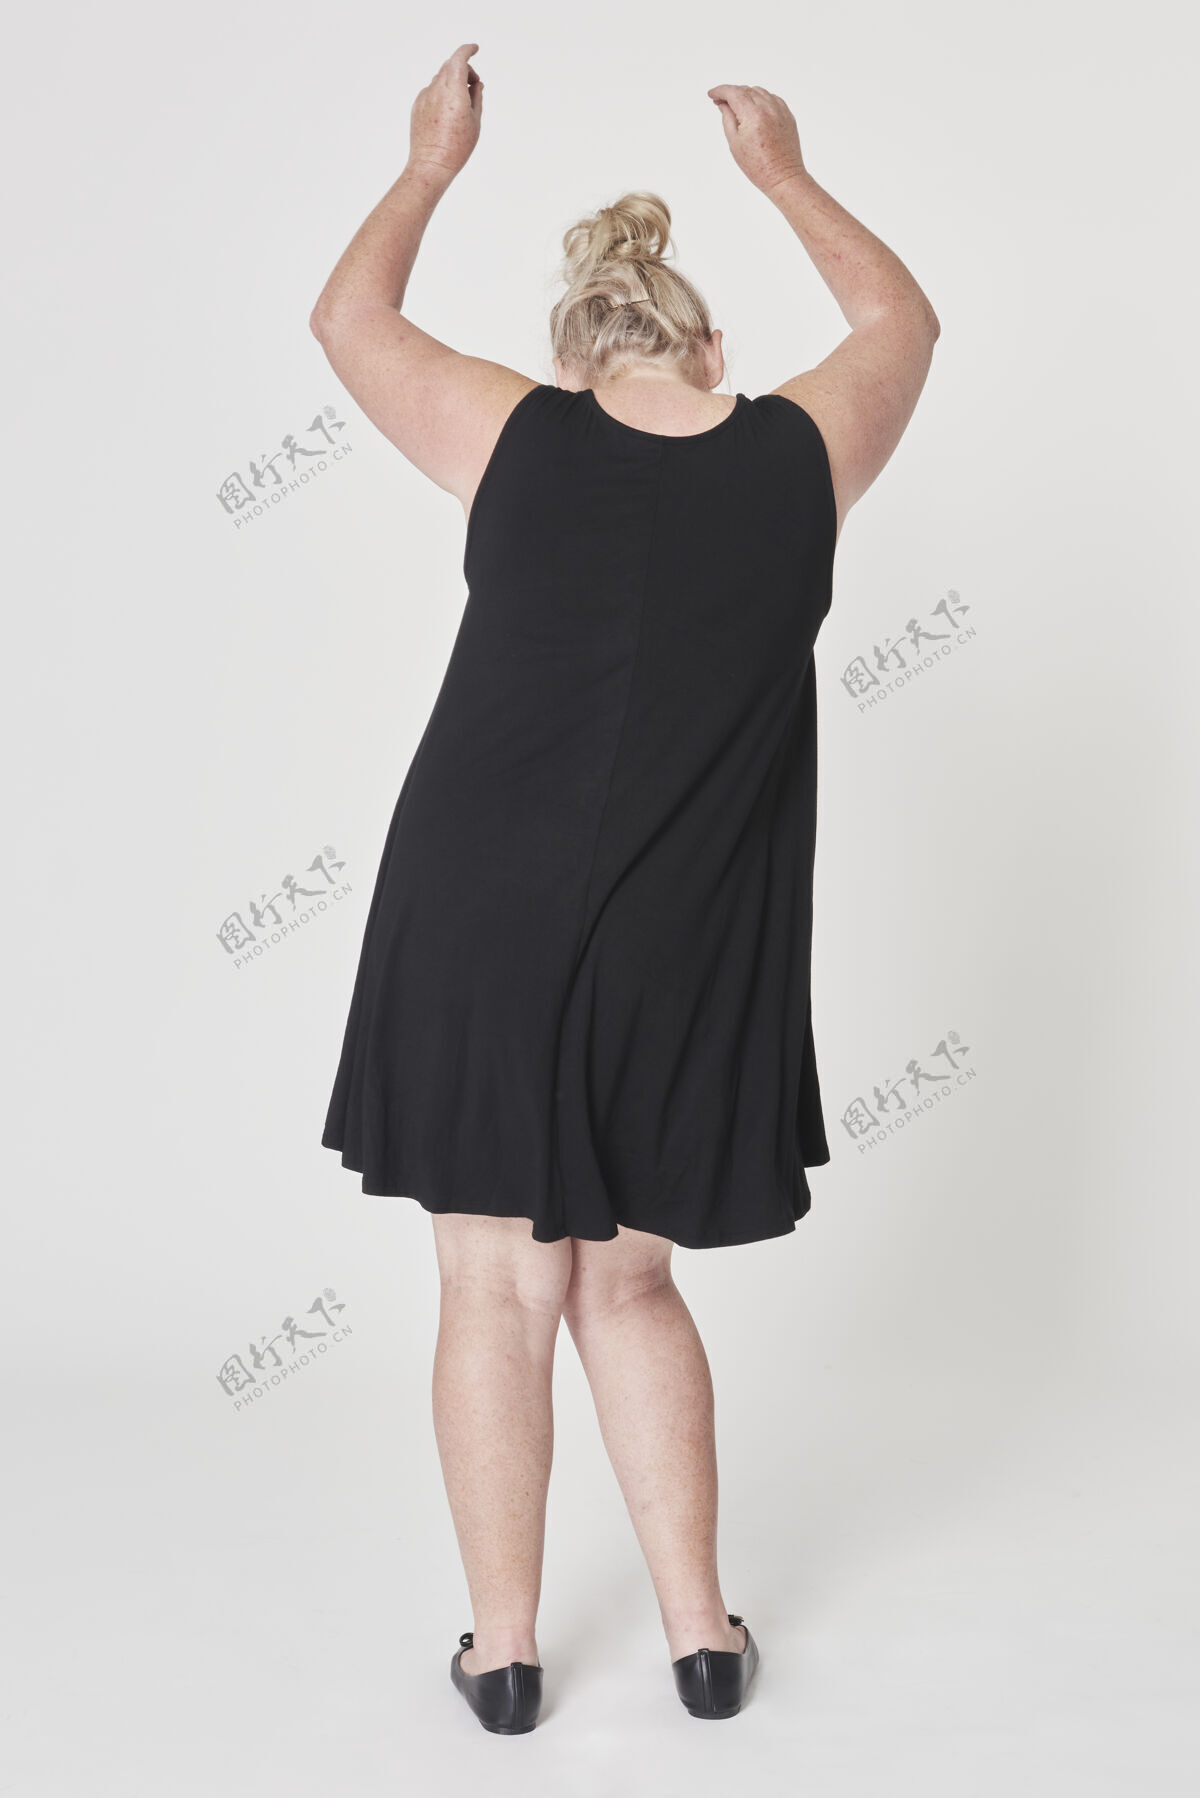 品牌黑色礼服加上尺寸服装身体积极舞蹈白种女人高级